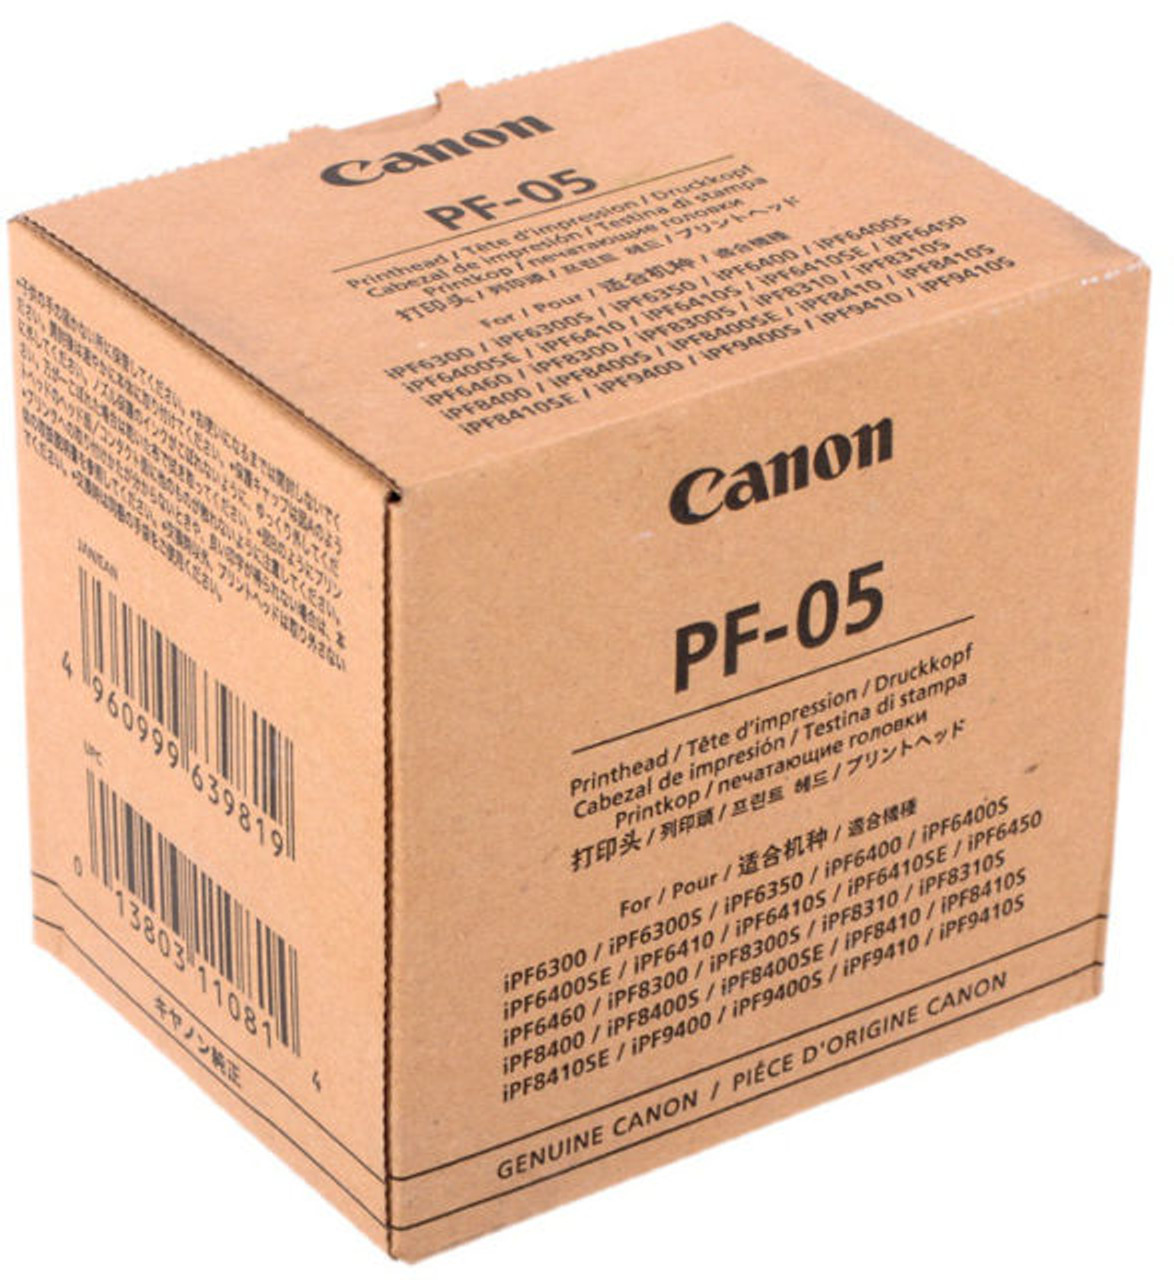 限定価格】Canon PF-05 プリンタヘッド-